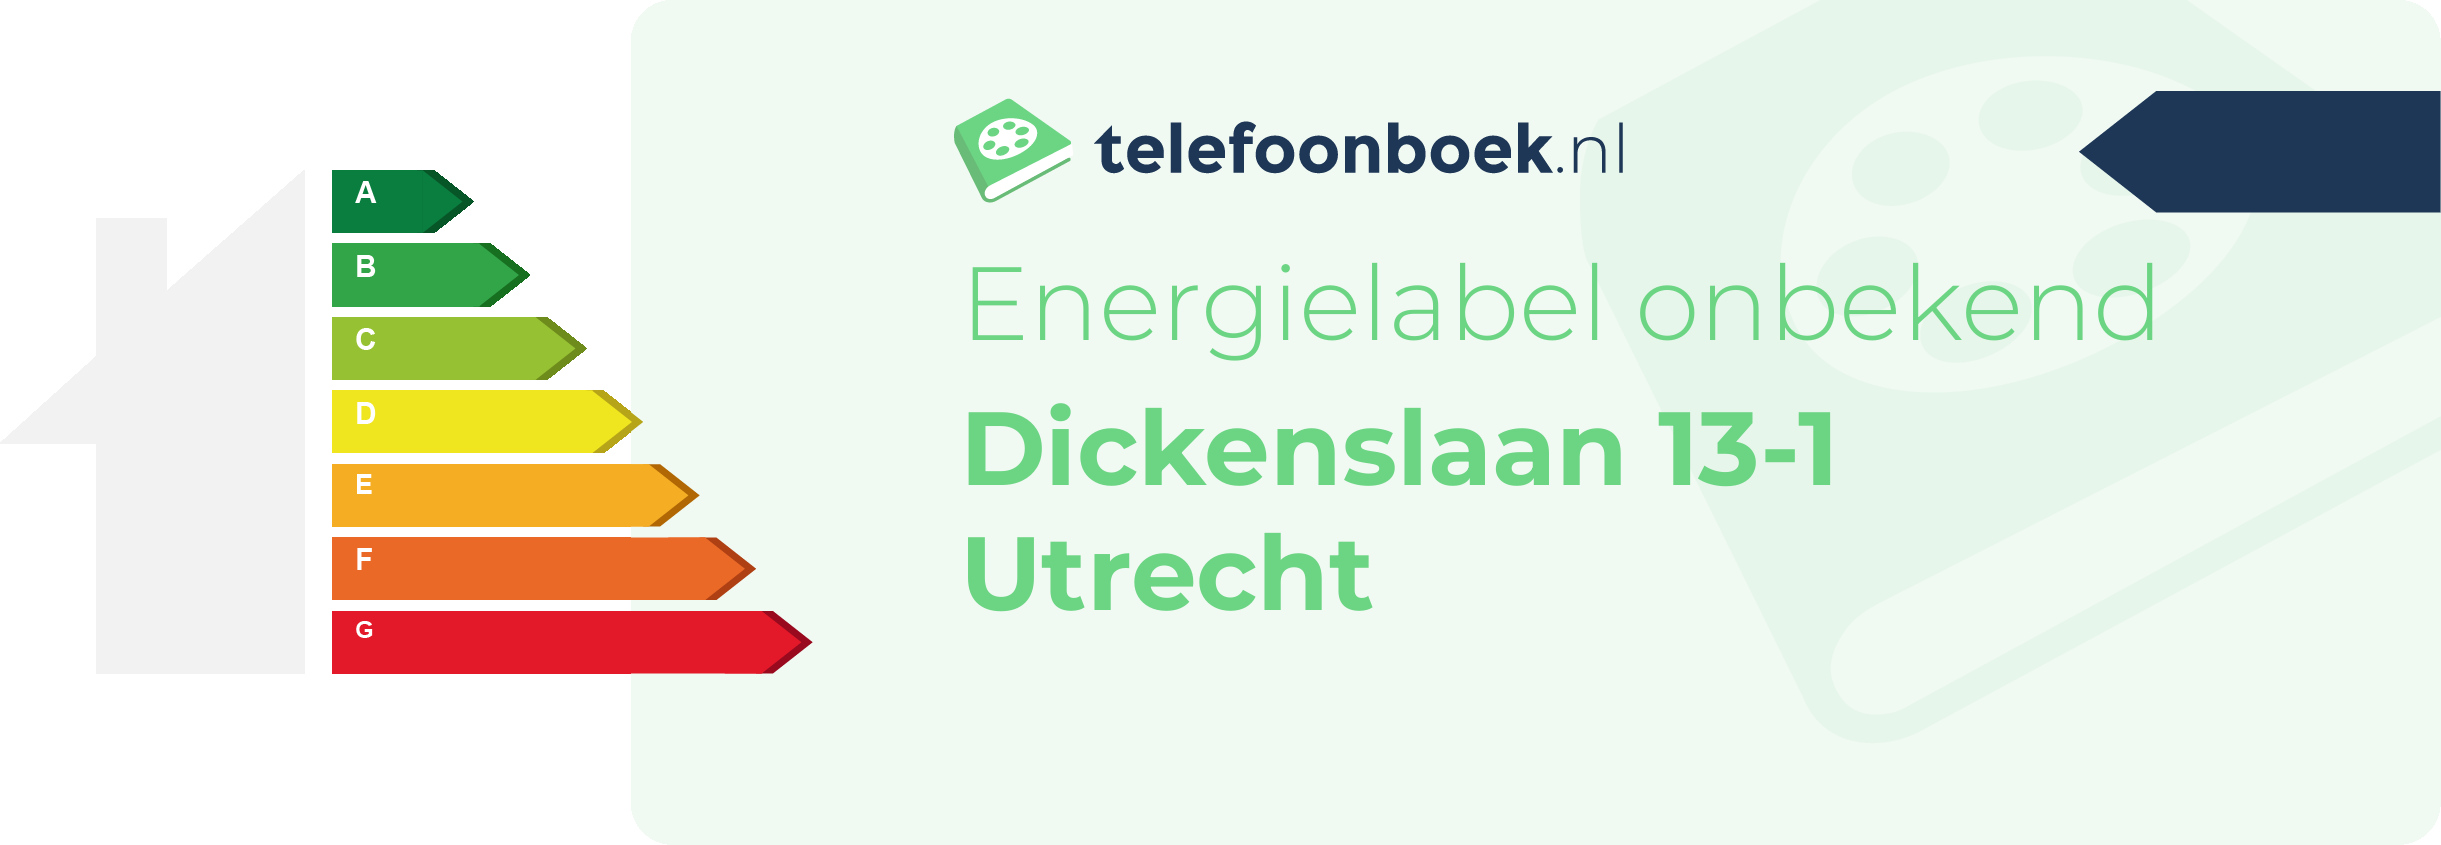 Energielabel Dickenslaan 13-1 Utrecht